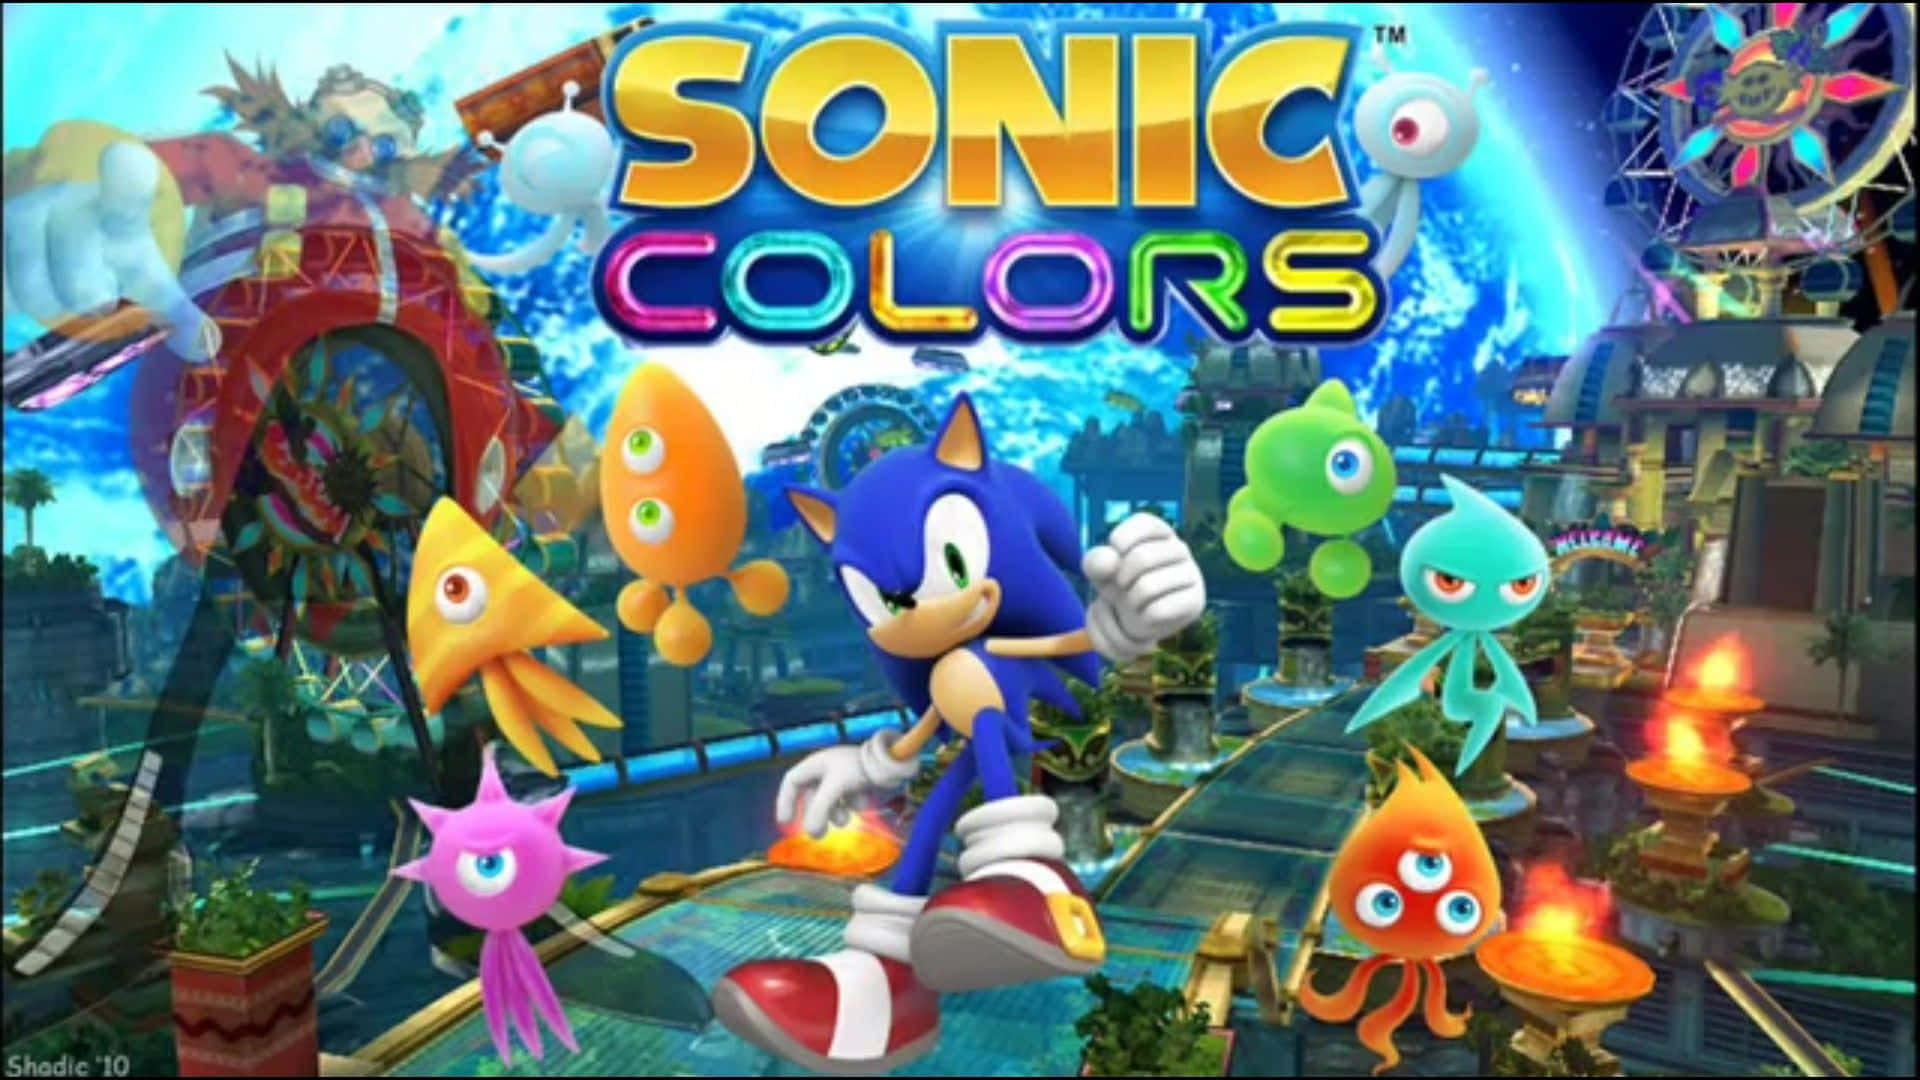 Soniccolores Con Sonic Y Aliens. Fondo de pantalla